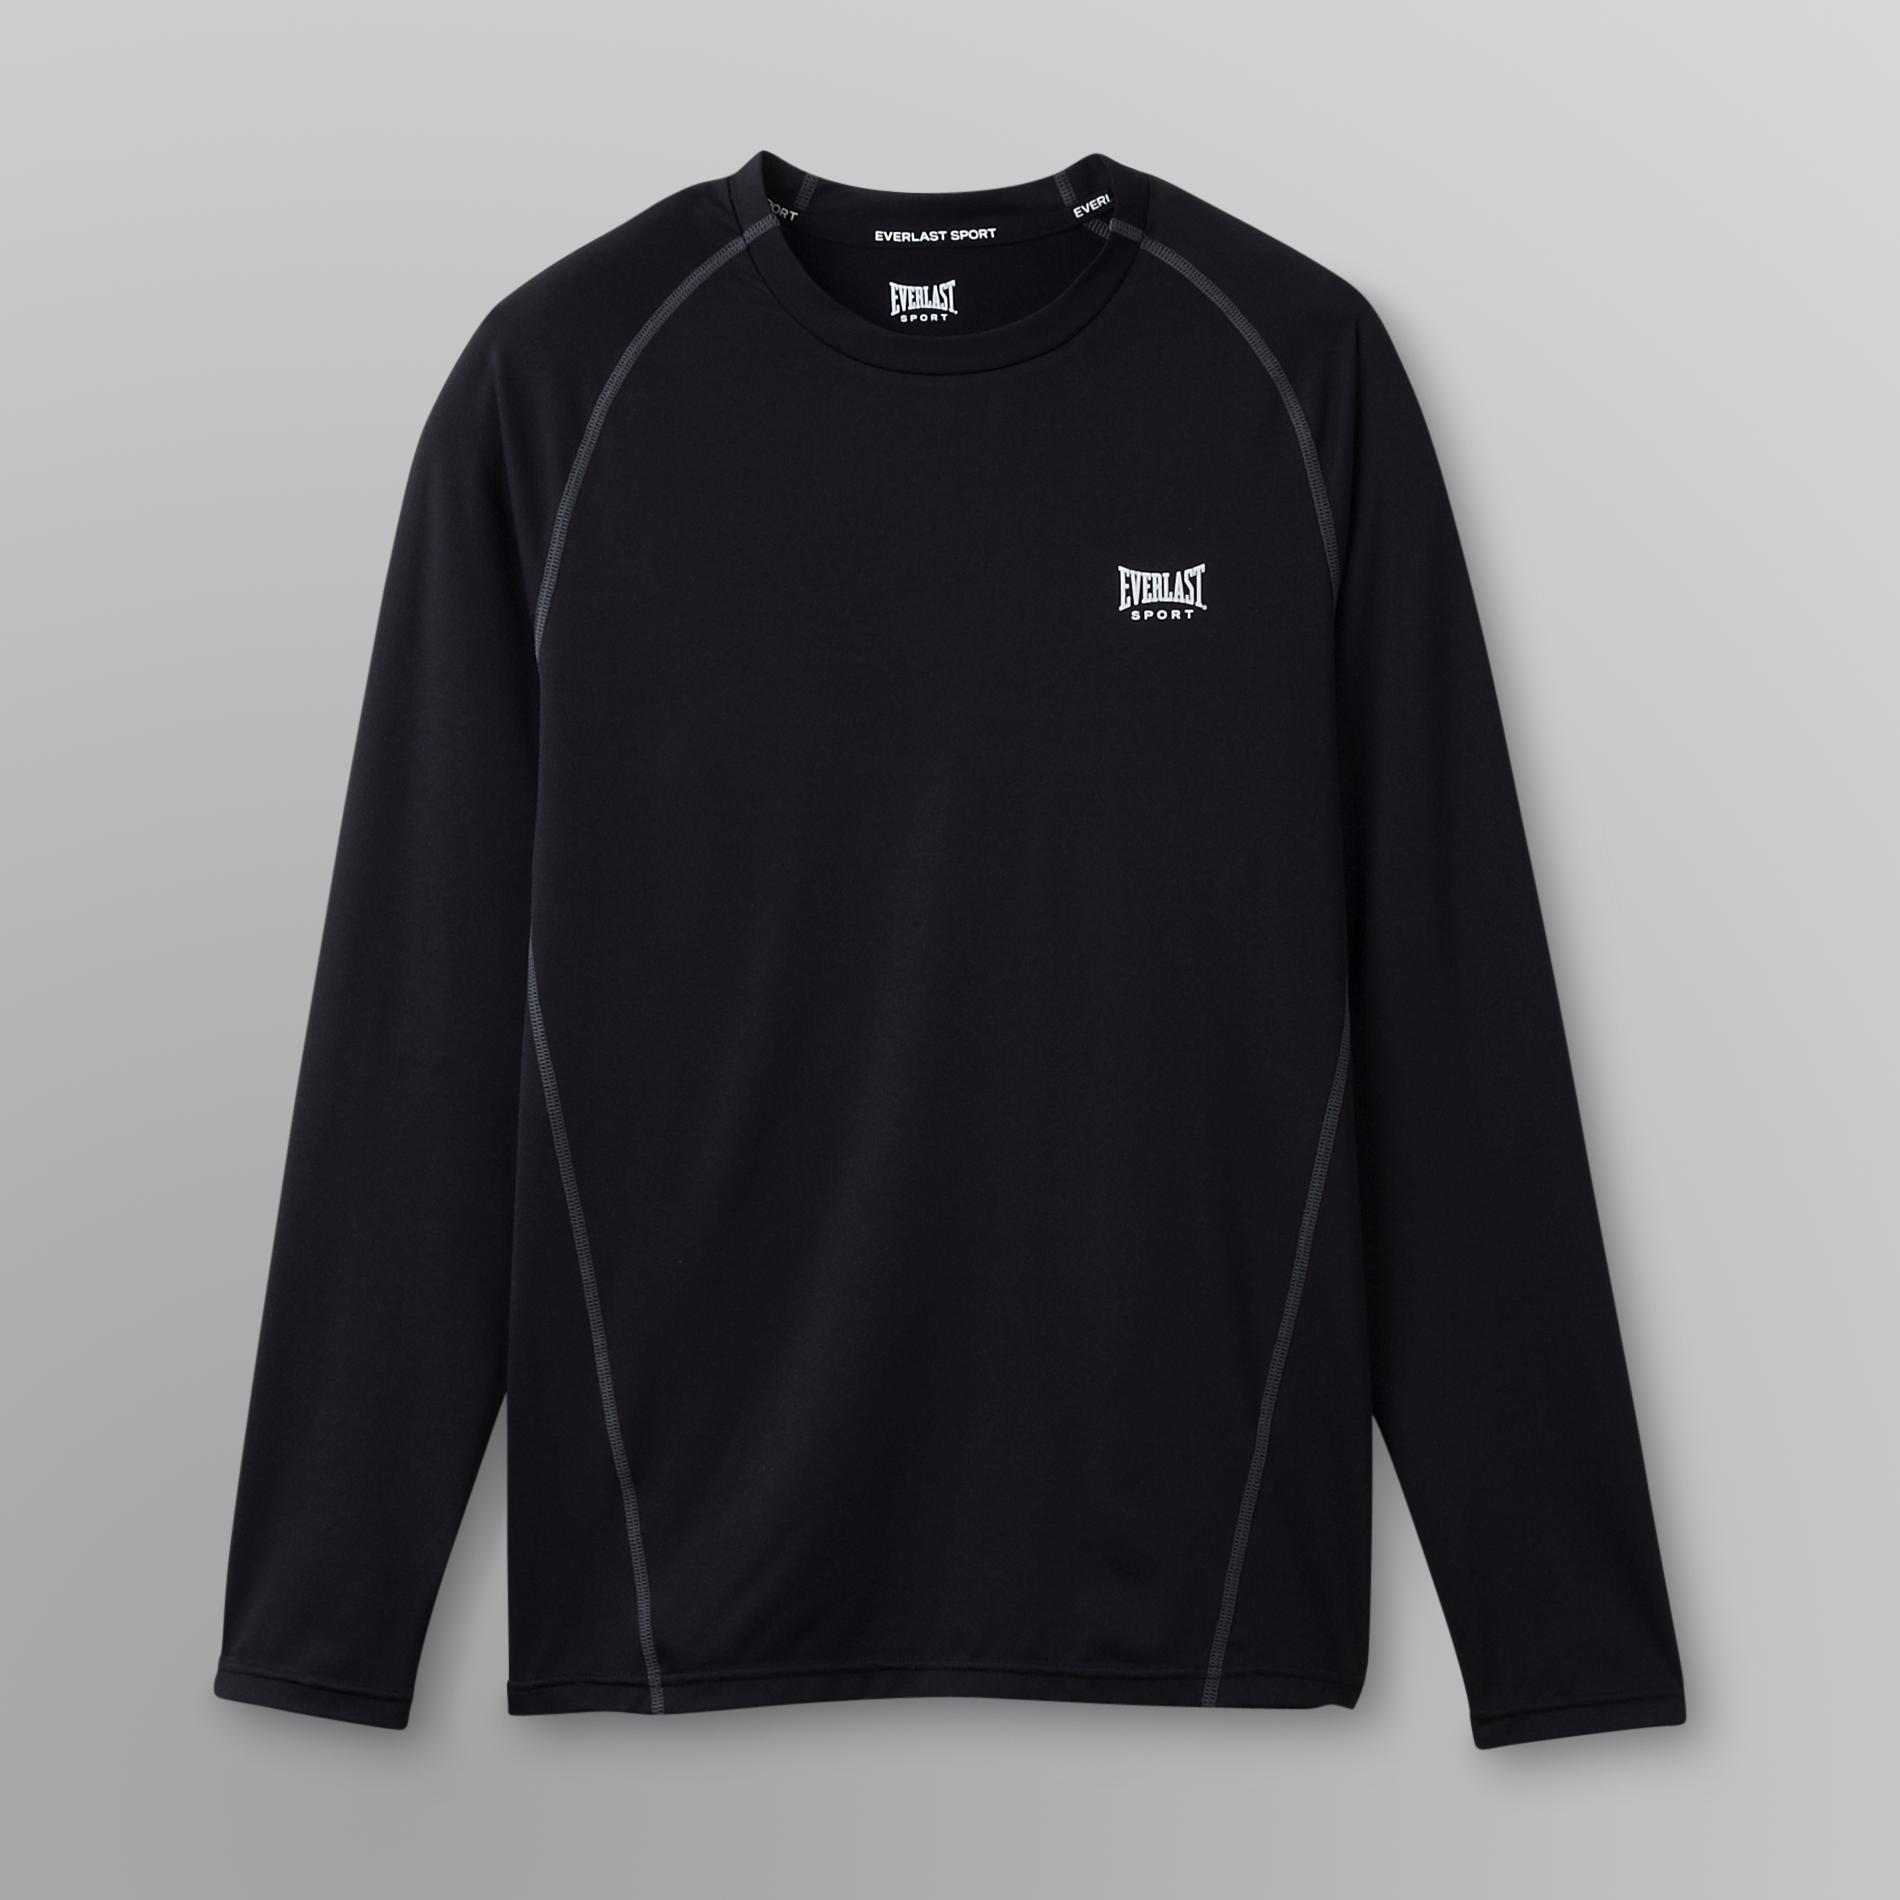 Everlast&reg; Sport Men's Long-Sleeve Athletic Shirt